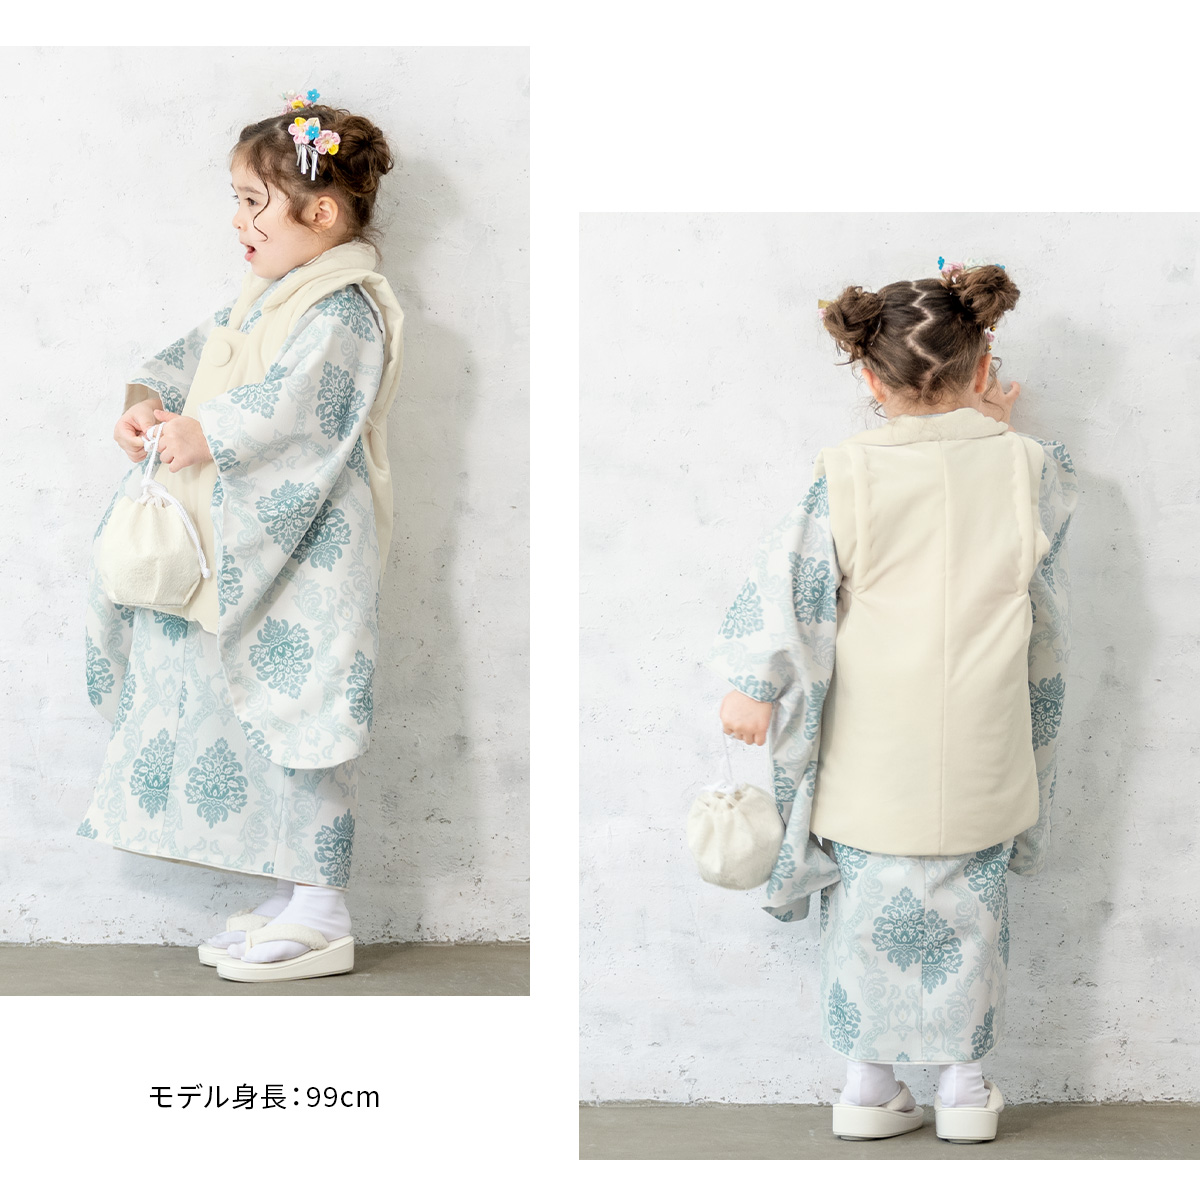 七五三 着物 3歳 販売 女の子 三歳 着物セット 被布セット 白 青系 